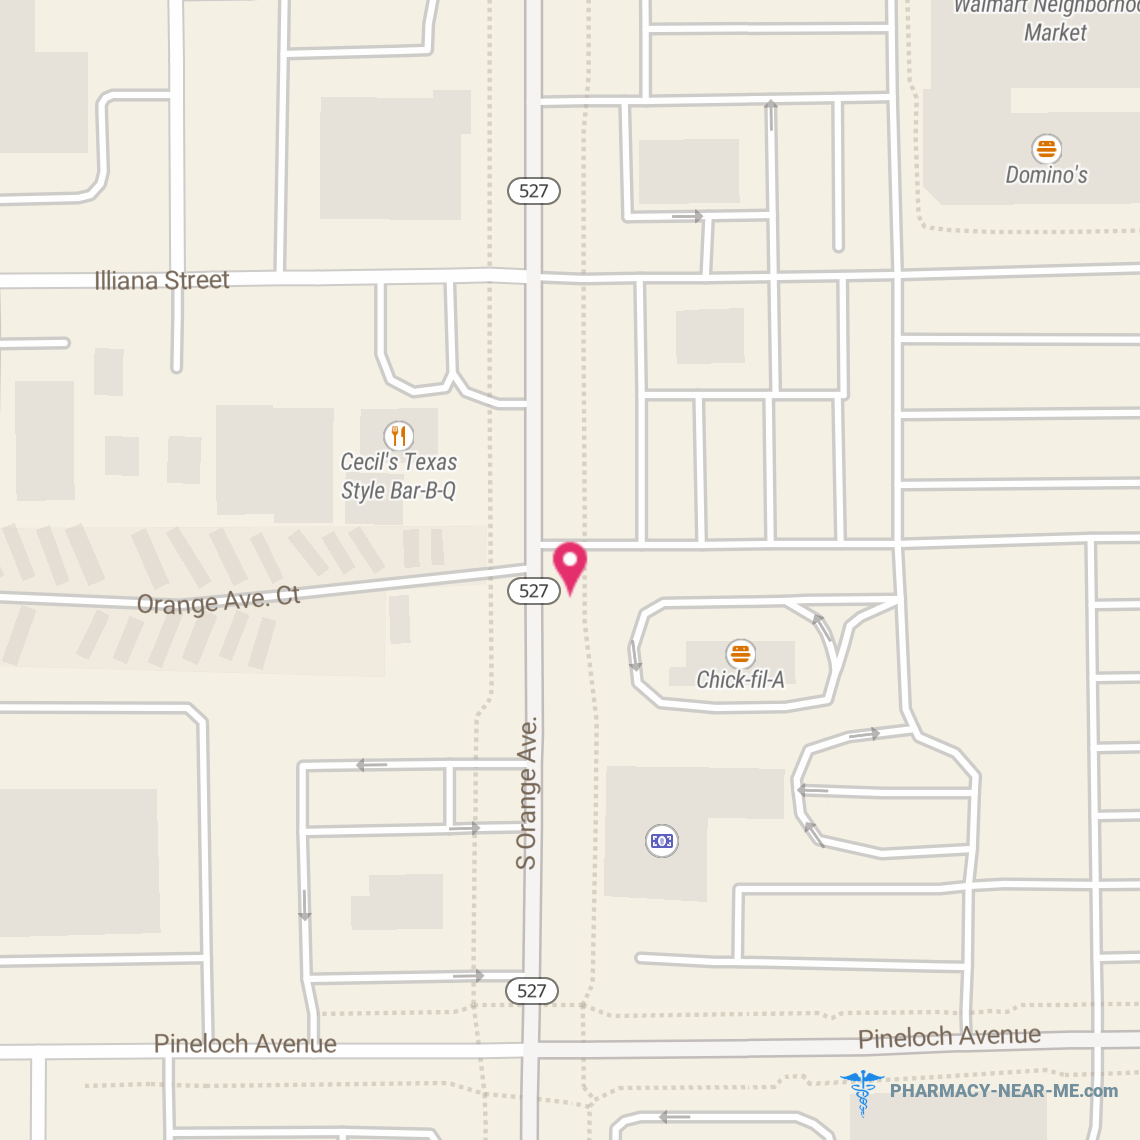 PUBLIX PHARMACY #0436 - Pharmacy Hours, Phone, Reviews & Information: 2873 S Orange Ave, Orlando, Florida 32806, United States